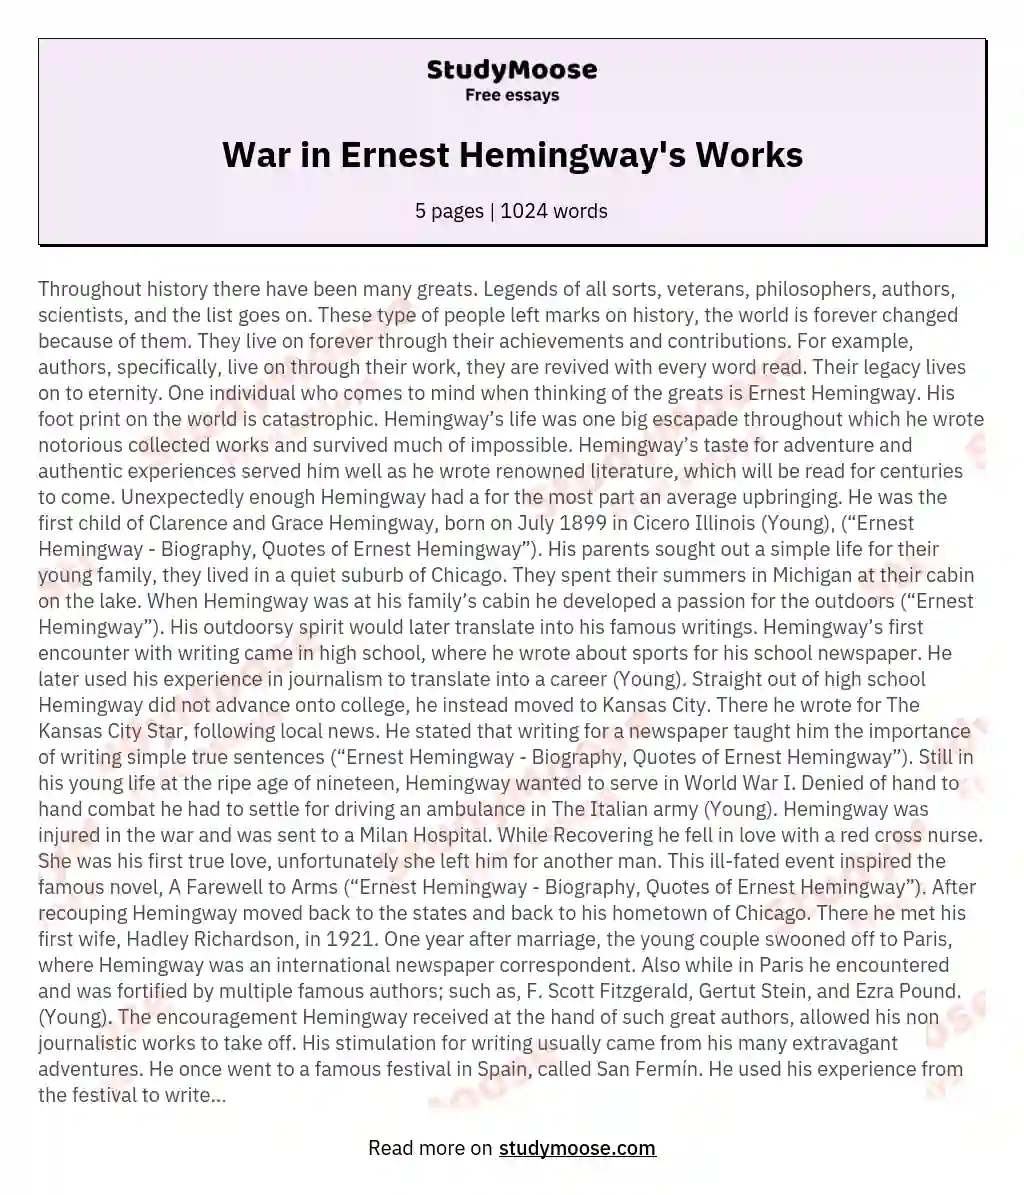 War in Ernest Hemingway's Works essay